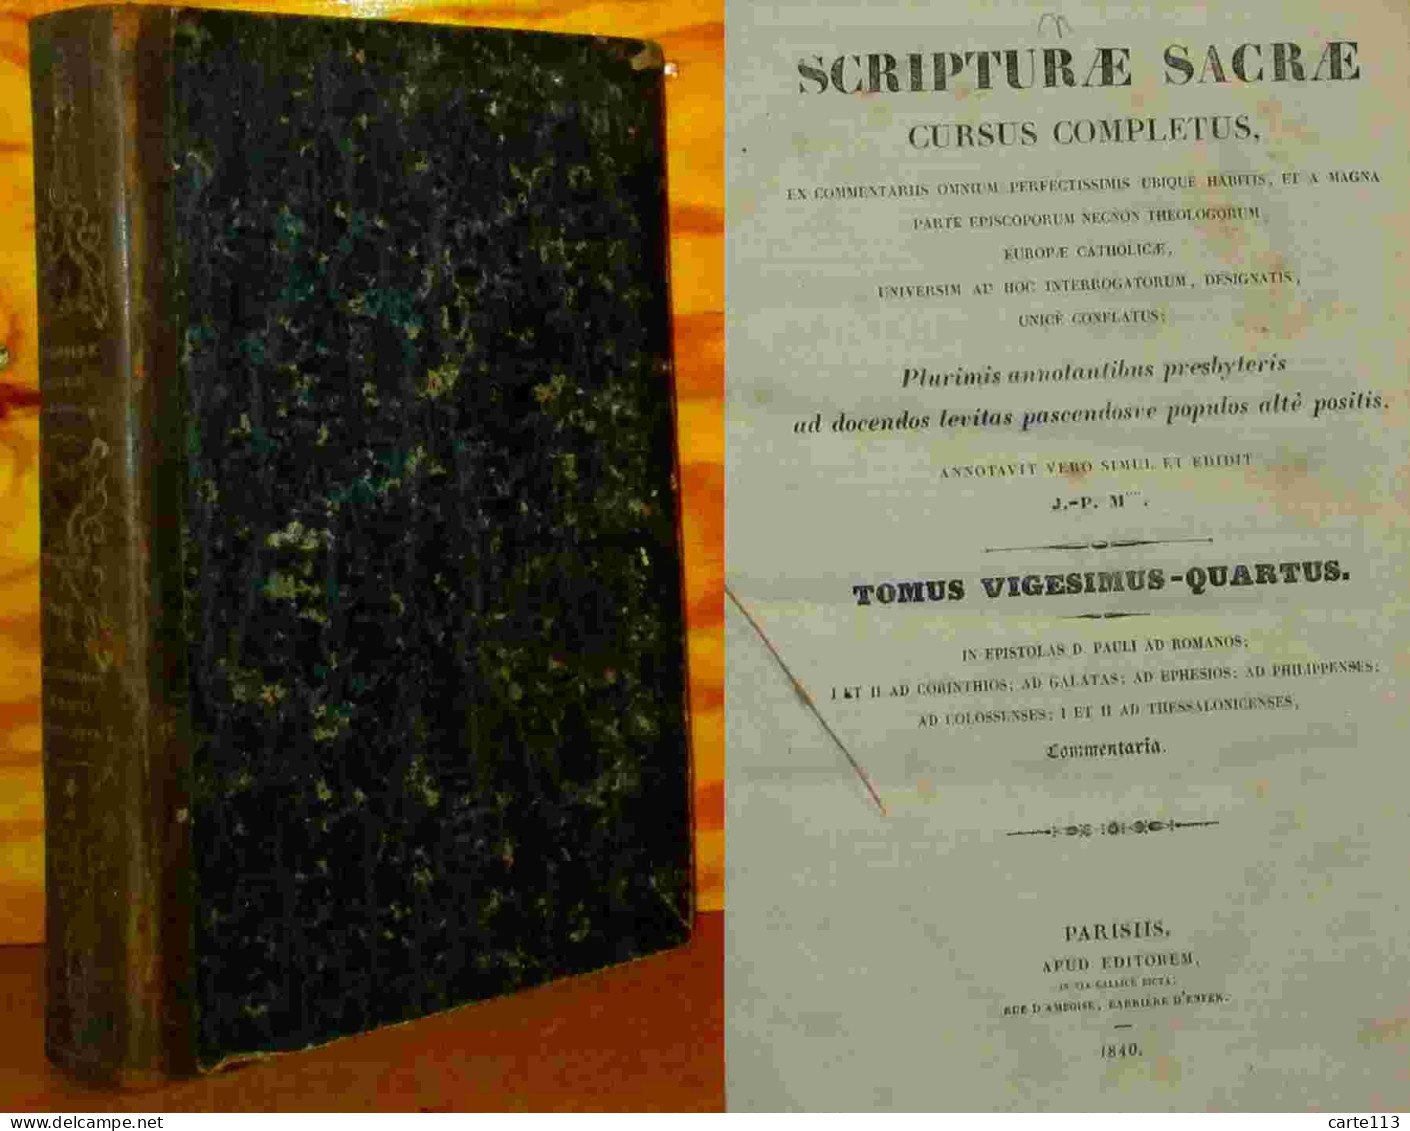 MIGNE Jacques-Paul - SCRIPTURAE SACRAE - CURSUS COMPLETUS - IN EPISTOLAS D. PAULI COMMENTA - 1801-1900